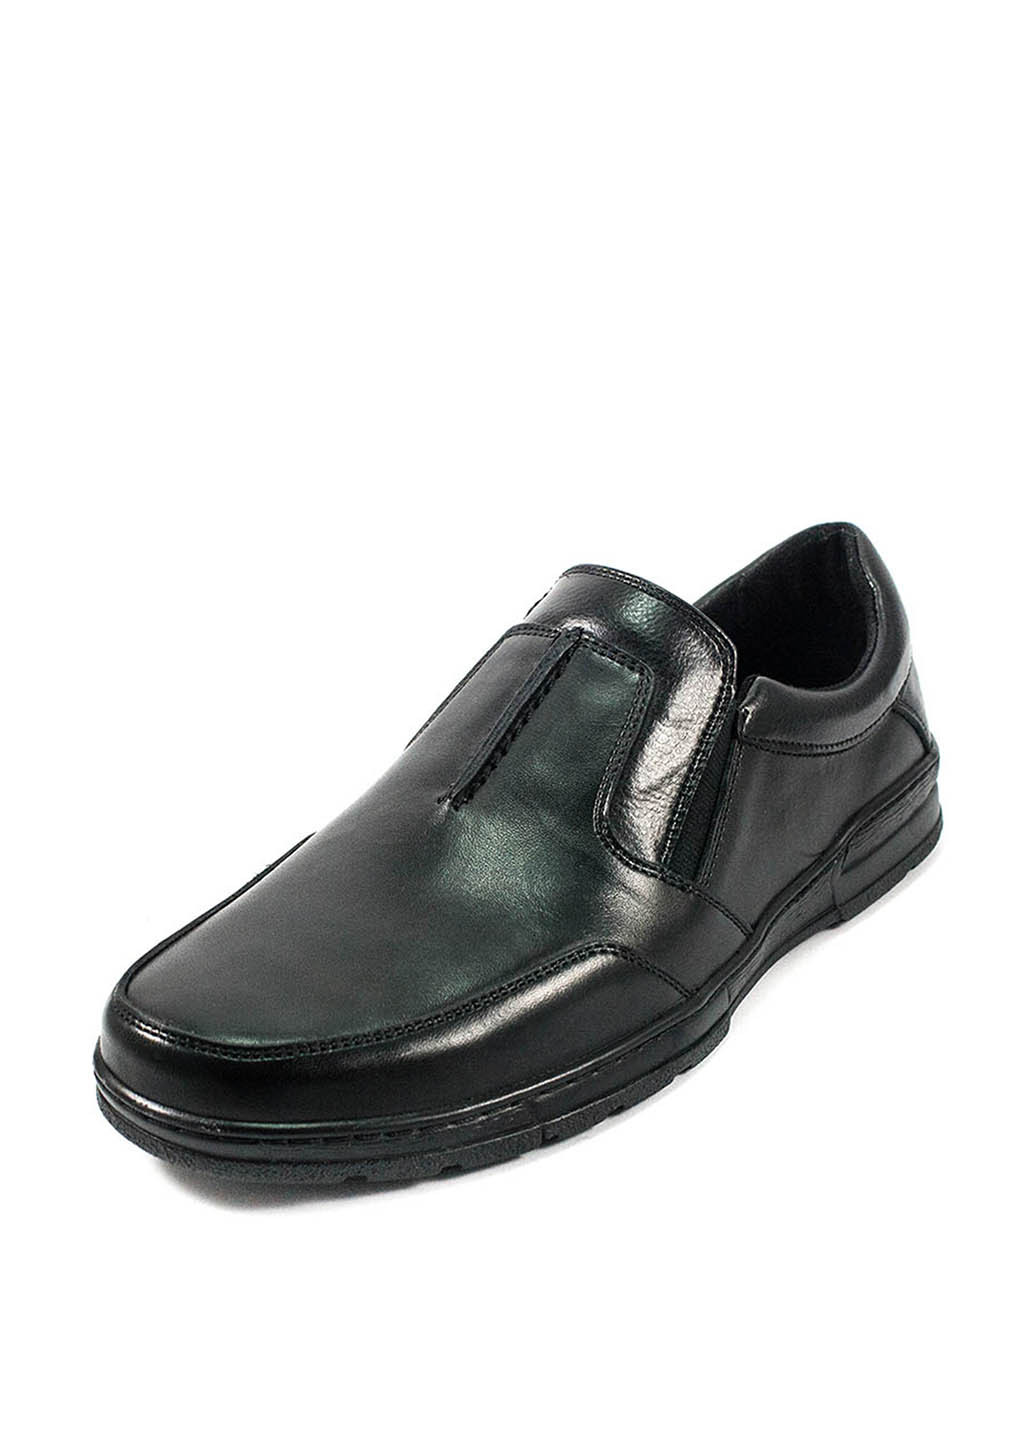 Черные классические туфли Bastion на резинке